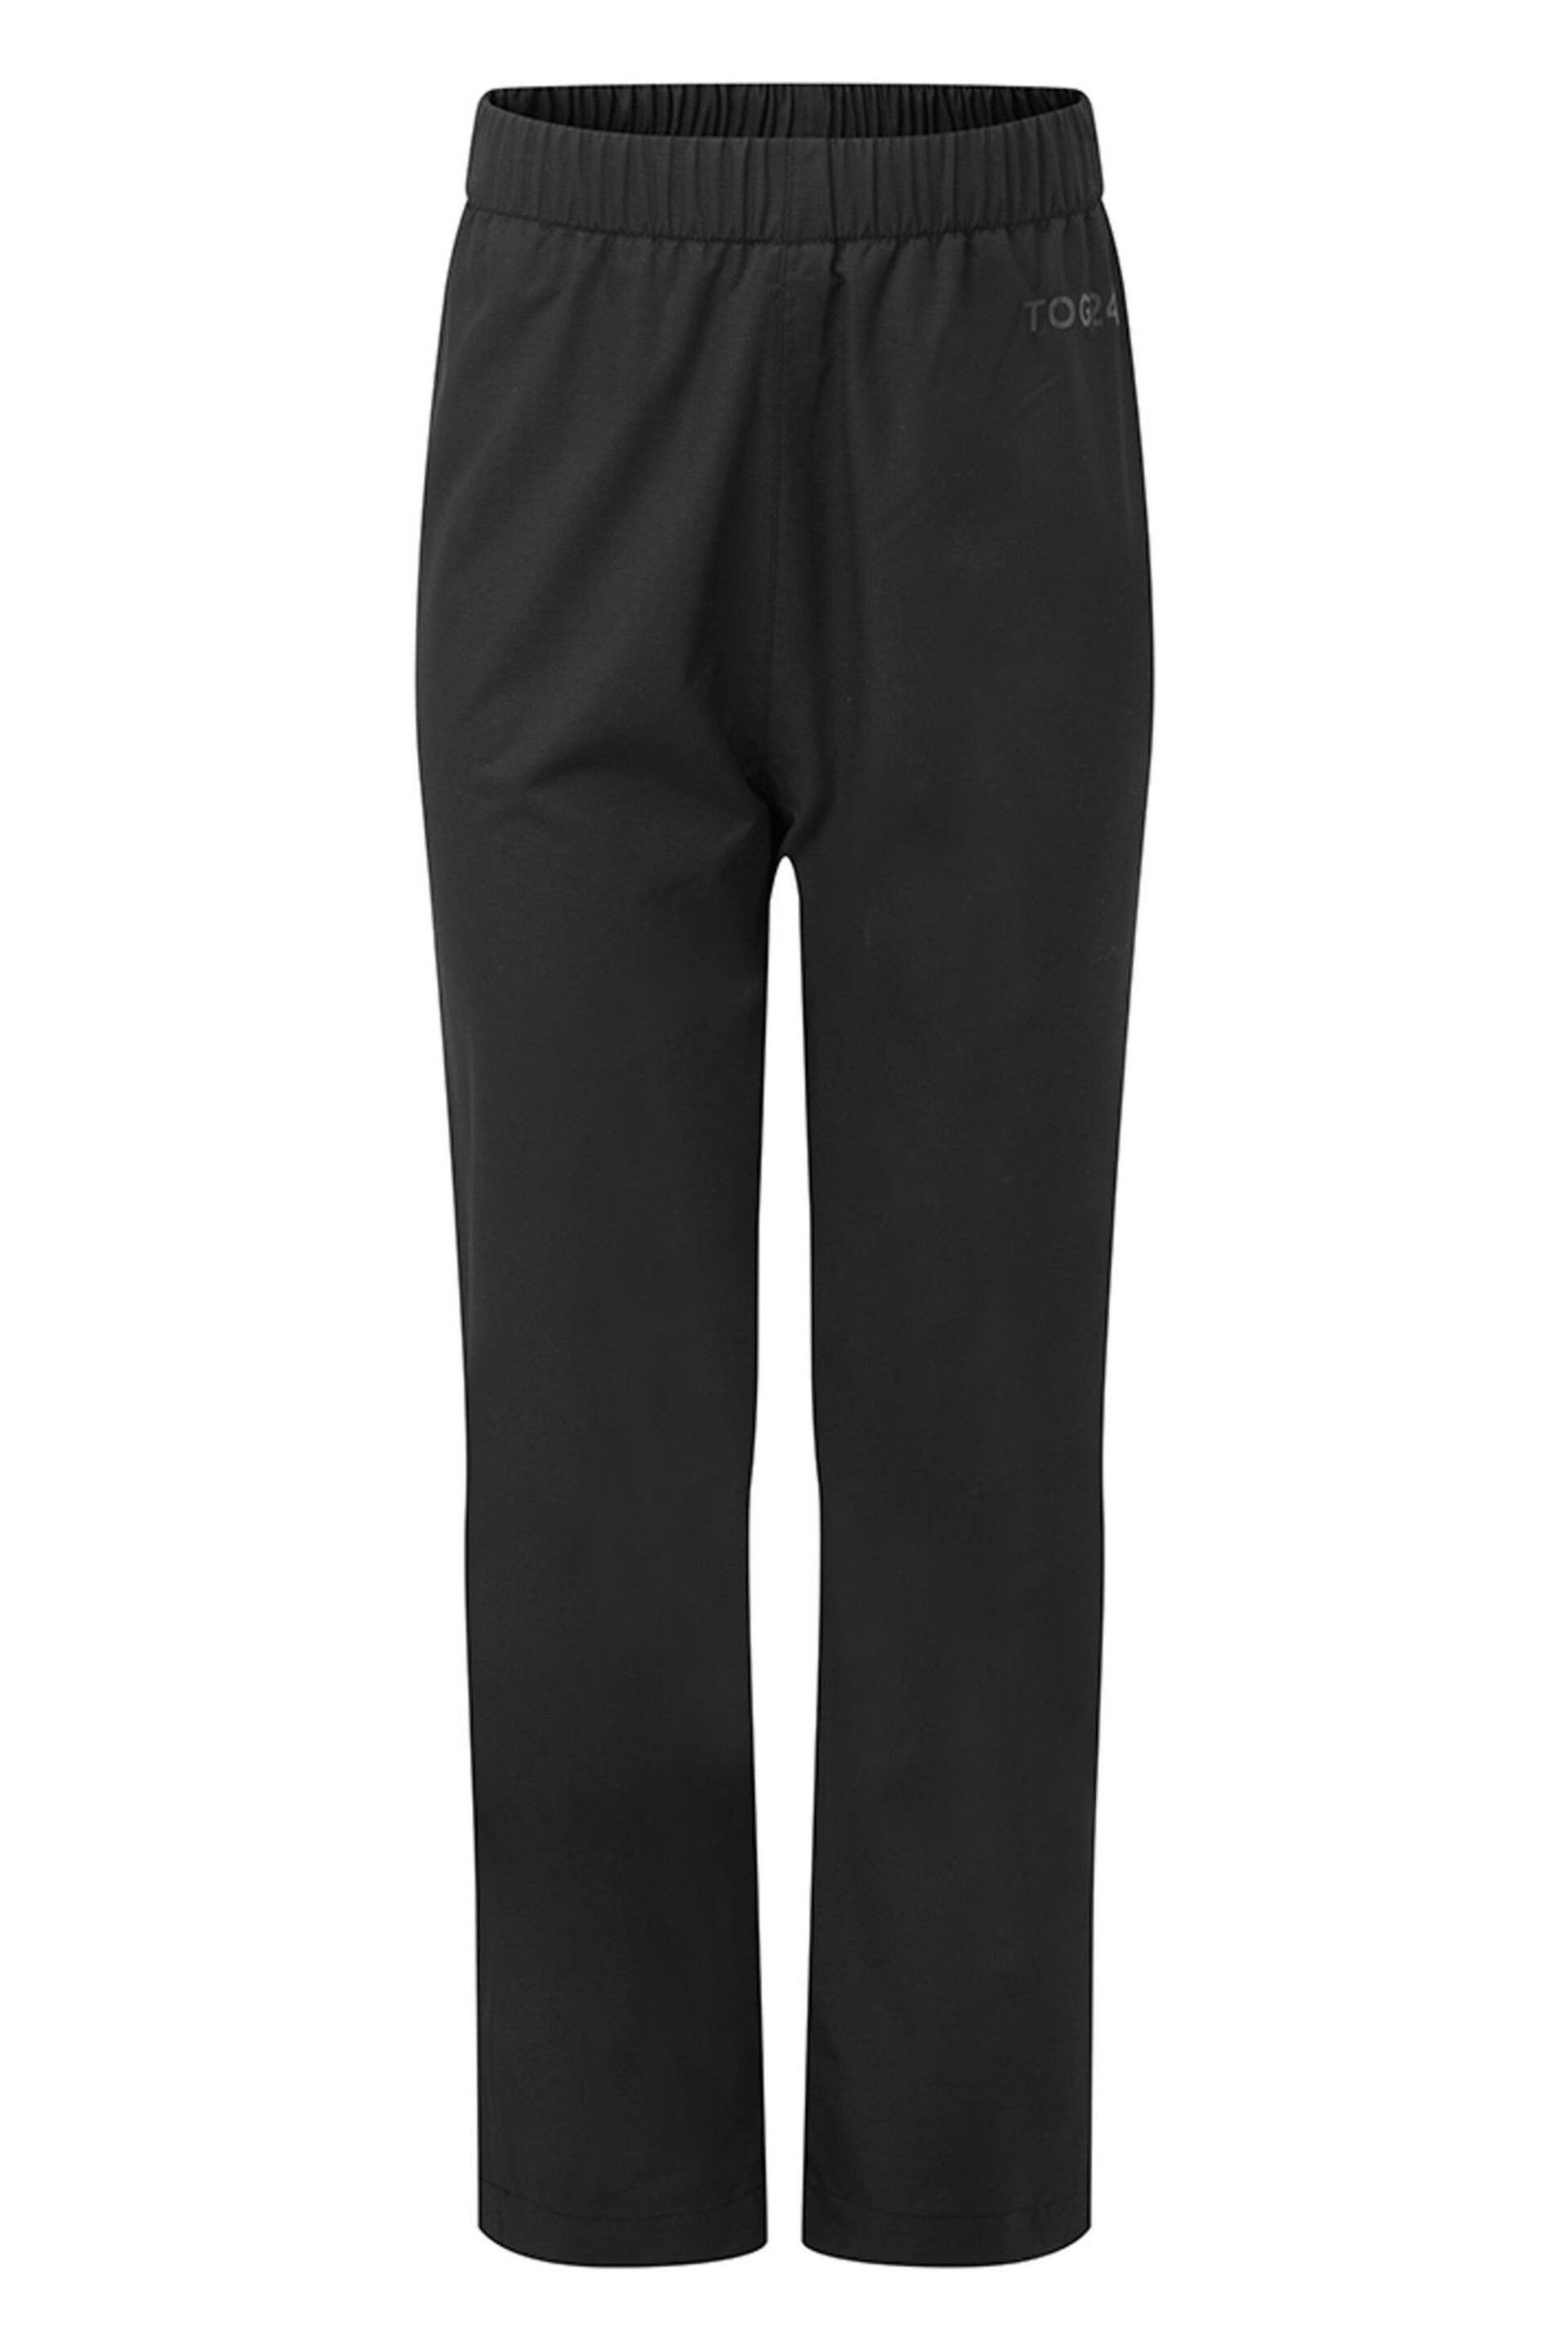 Tog 24 Black Hainworth Waterproof Trousers - Image 1 of 2